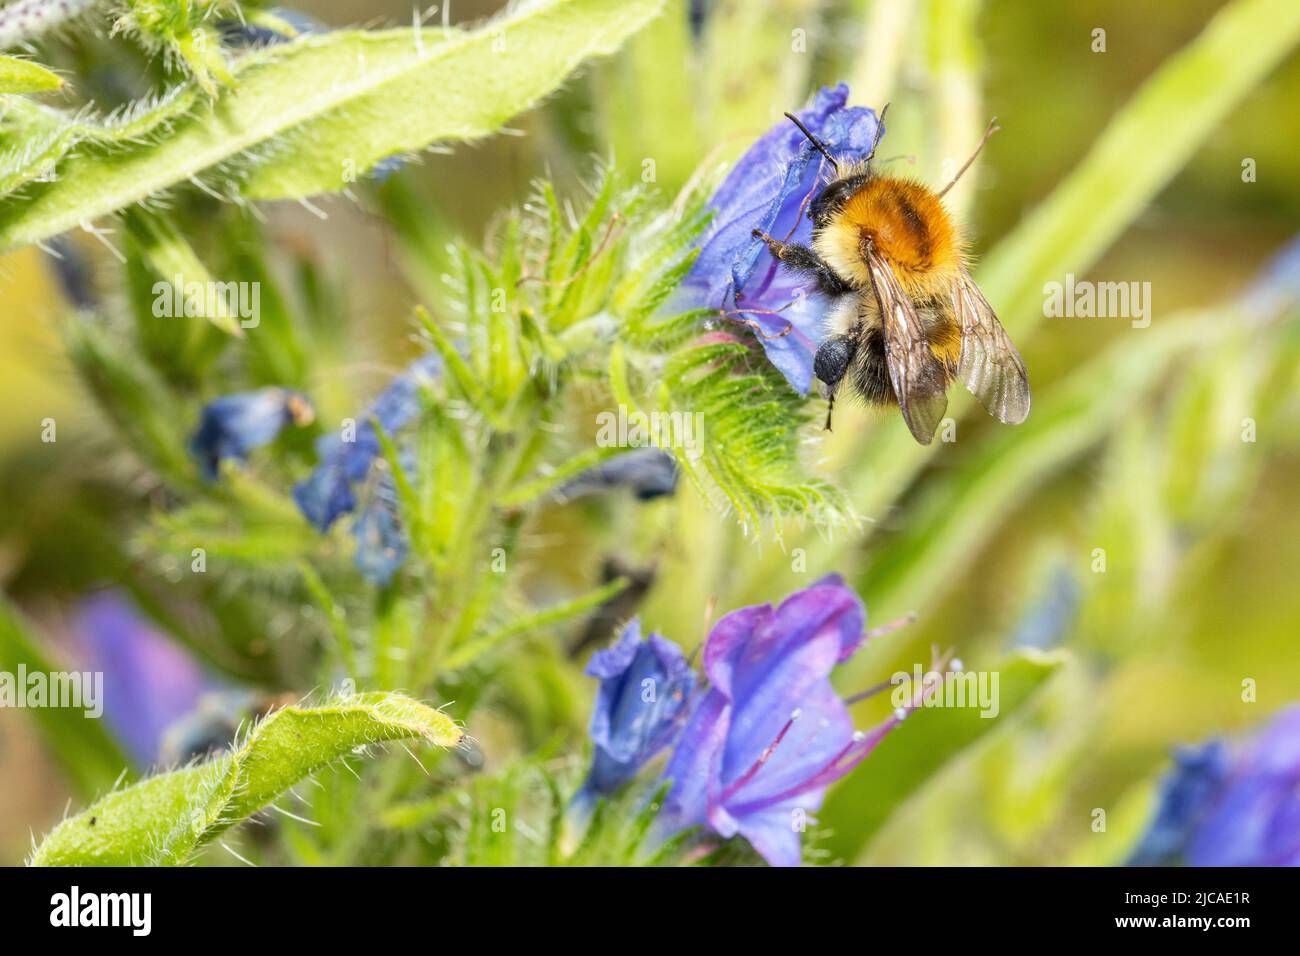 Comune Bumblebee cardano visitare fiore in un giardino nel sud dell'Inghilterra. I Bumblebees sono un gruppo importante di impollinatori minacciati dal cambiamento climatico. Foto Stock